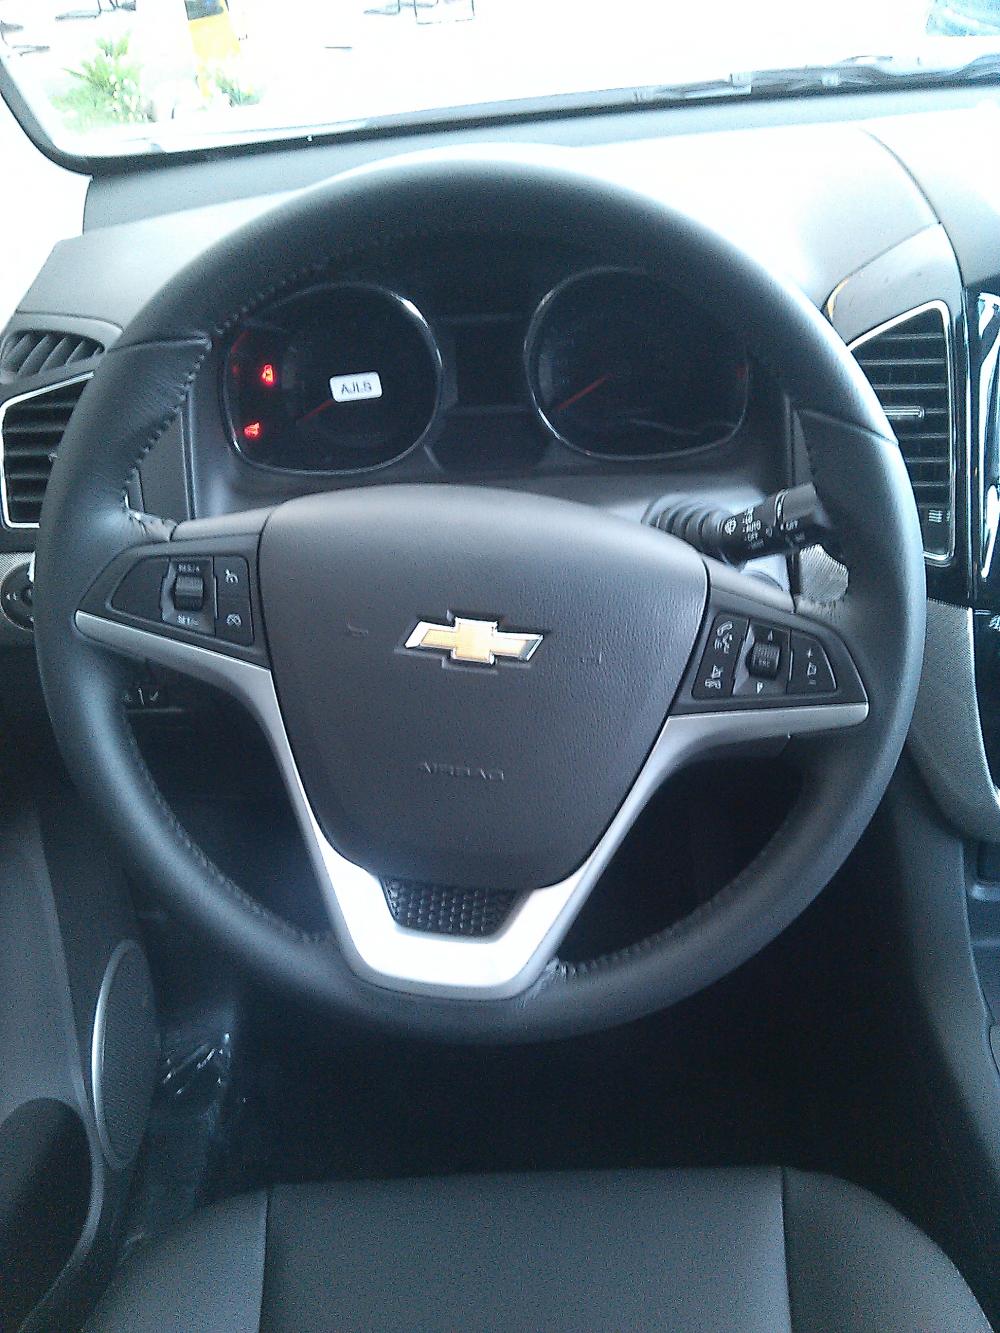 Chevrolet Captiva Revv - LTZ 2016 - Captiva Revv - sang trọng, đẳng cấp, an toàn 5 sao, khuyến mãi hấp dẫn 24tr đồng trong tháng 11